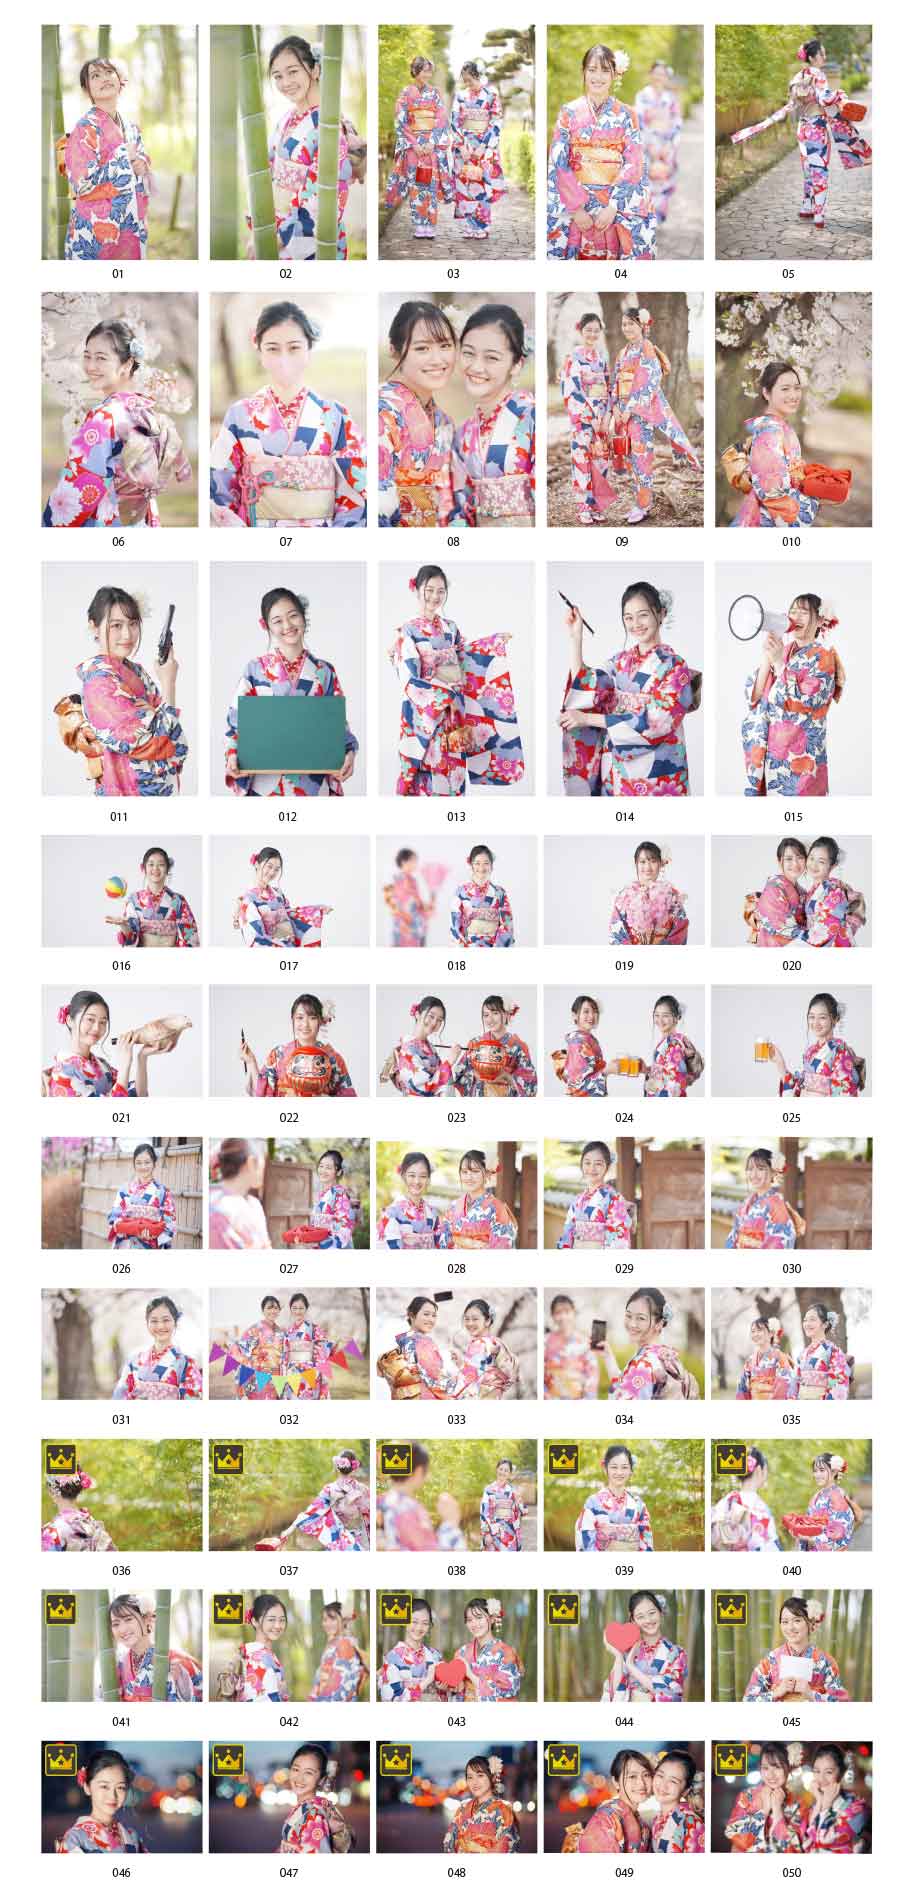 Hình ảnh phụ nữ Nhật Bản trong trang phục kimono